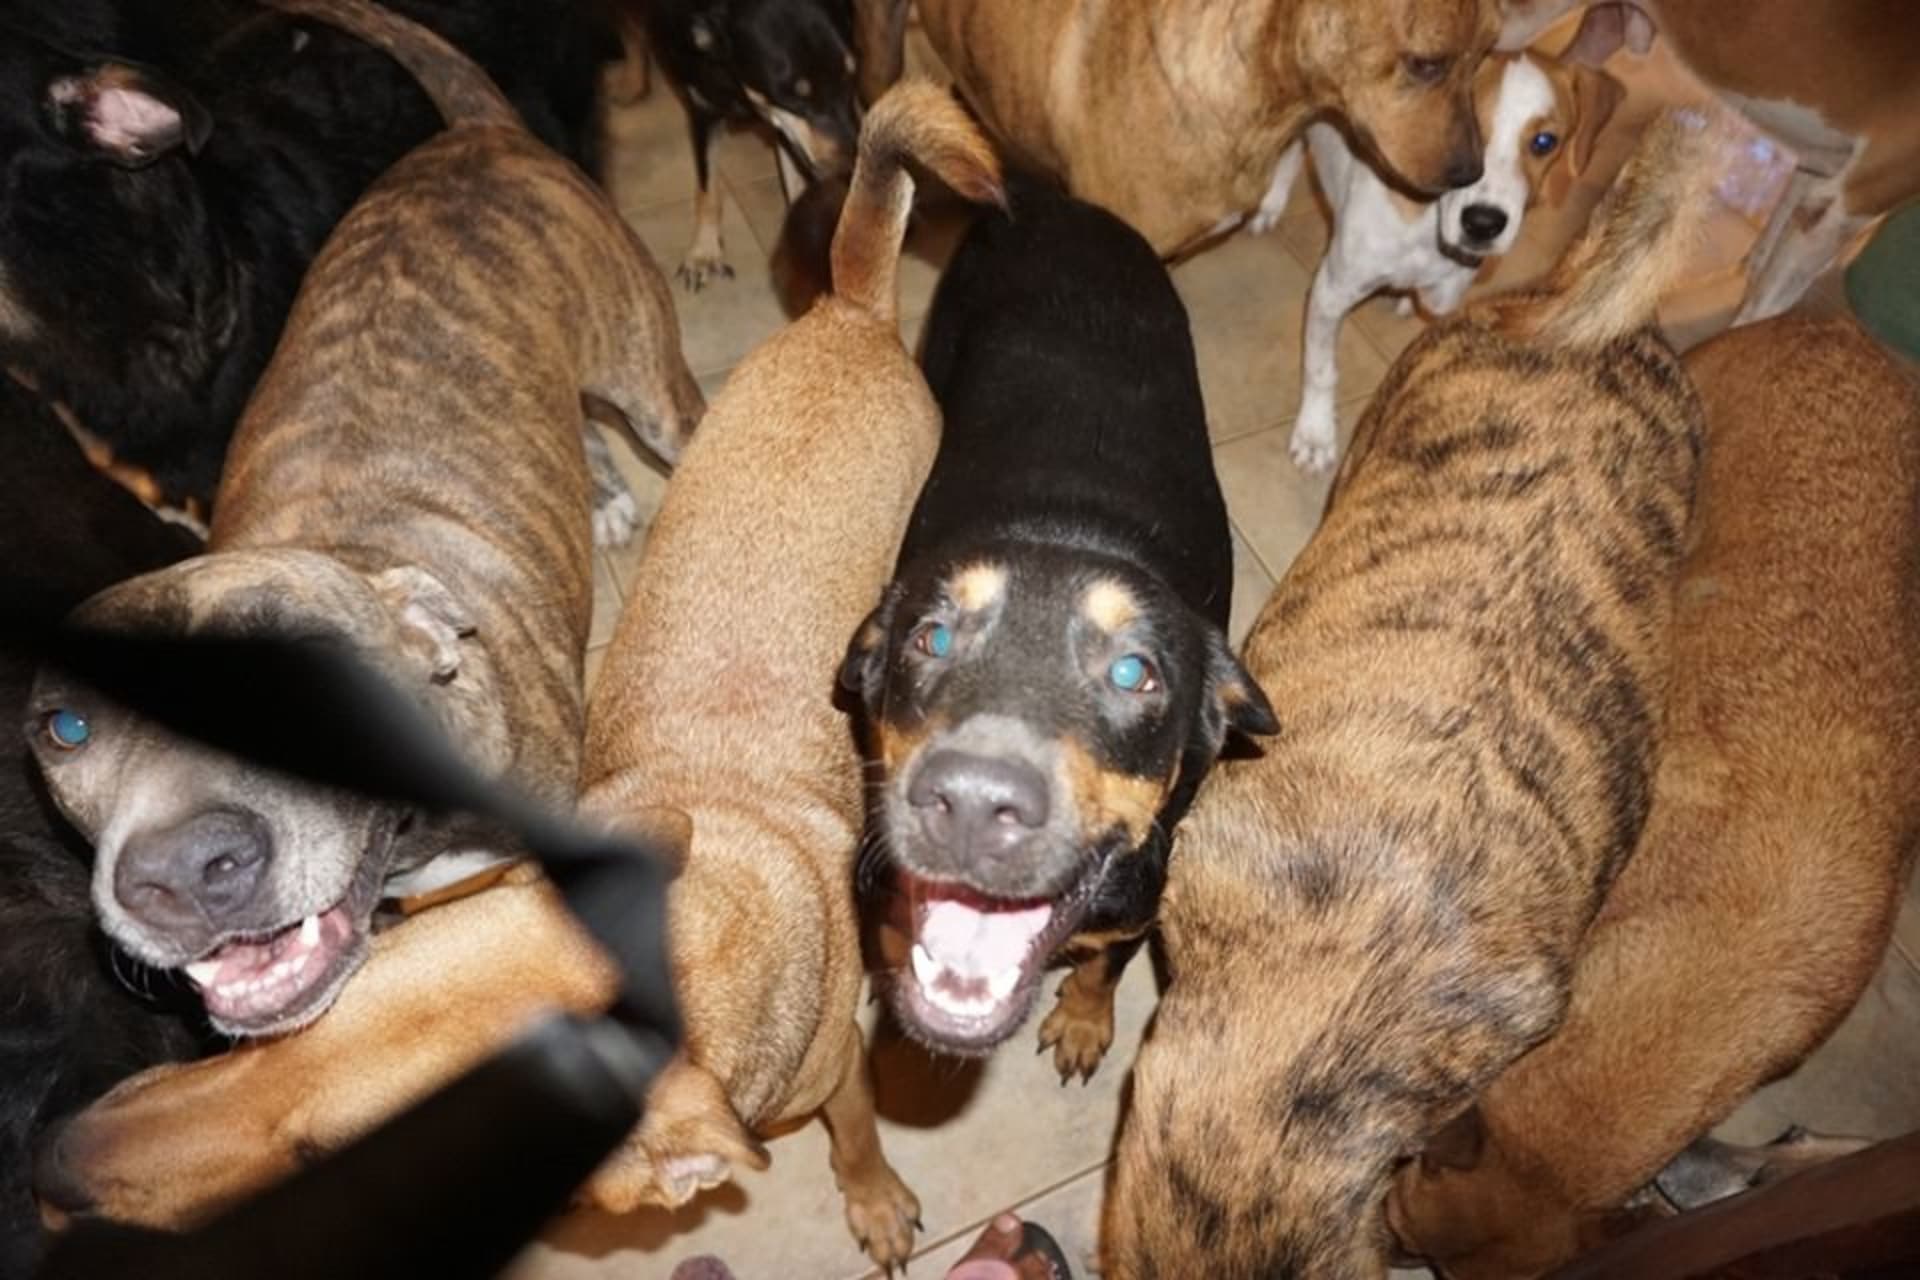 Ložnici obsadilo 79 psů bez domova.